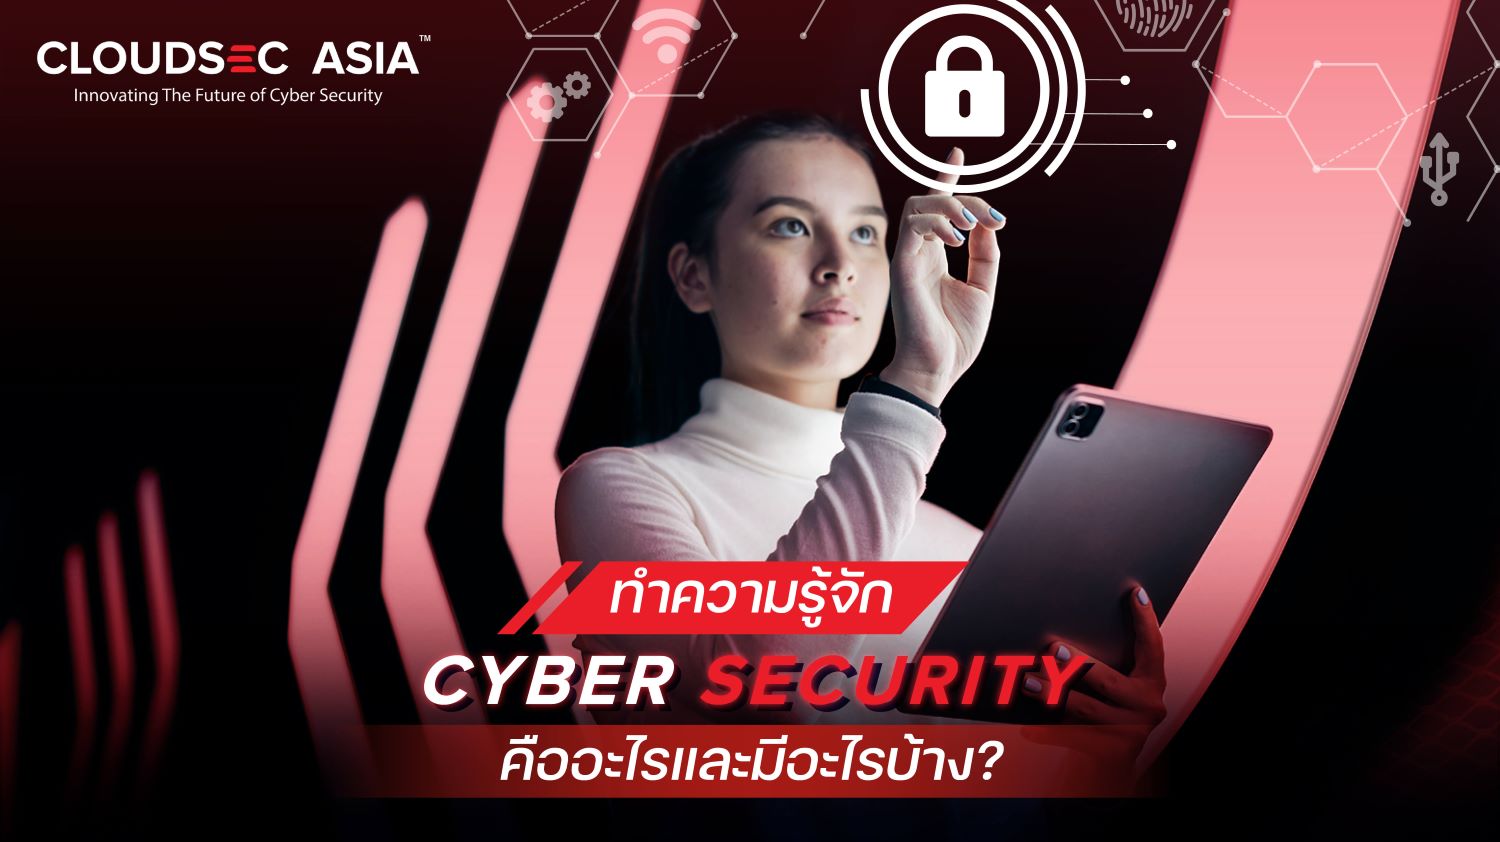 Cyber Security ความปลอดภัยทางไซเบอร์